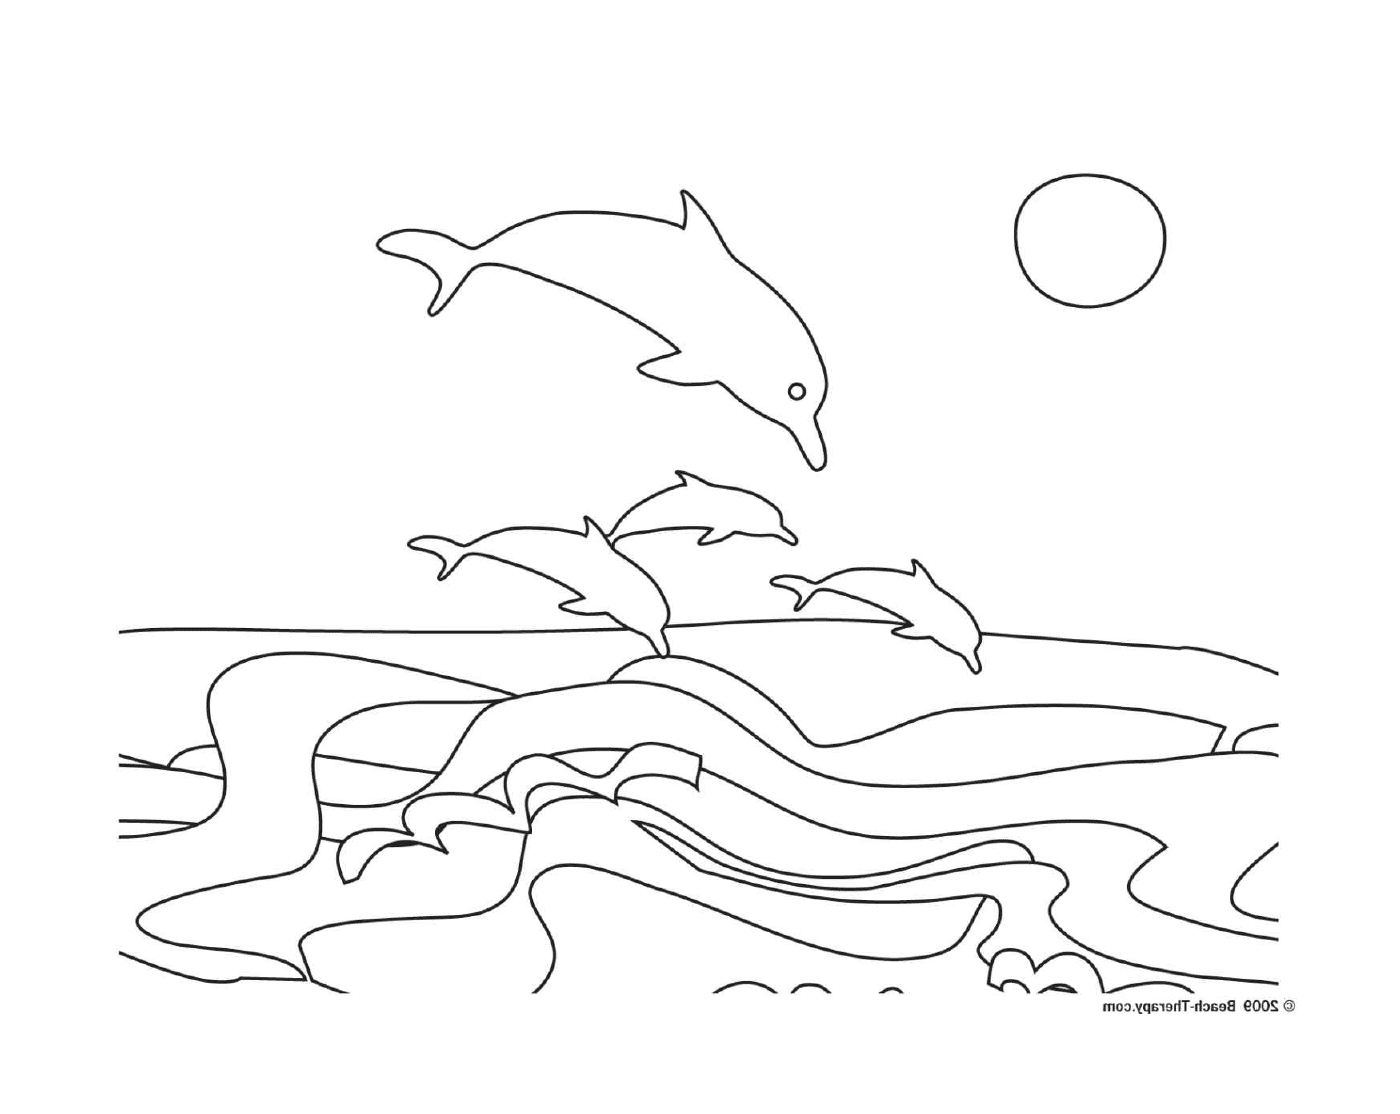  Gruppe von Delphinen springen aus dem Wasser 